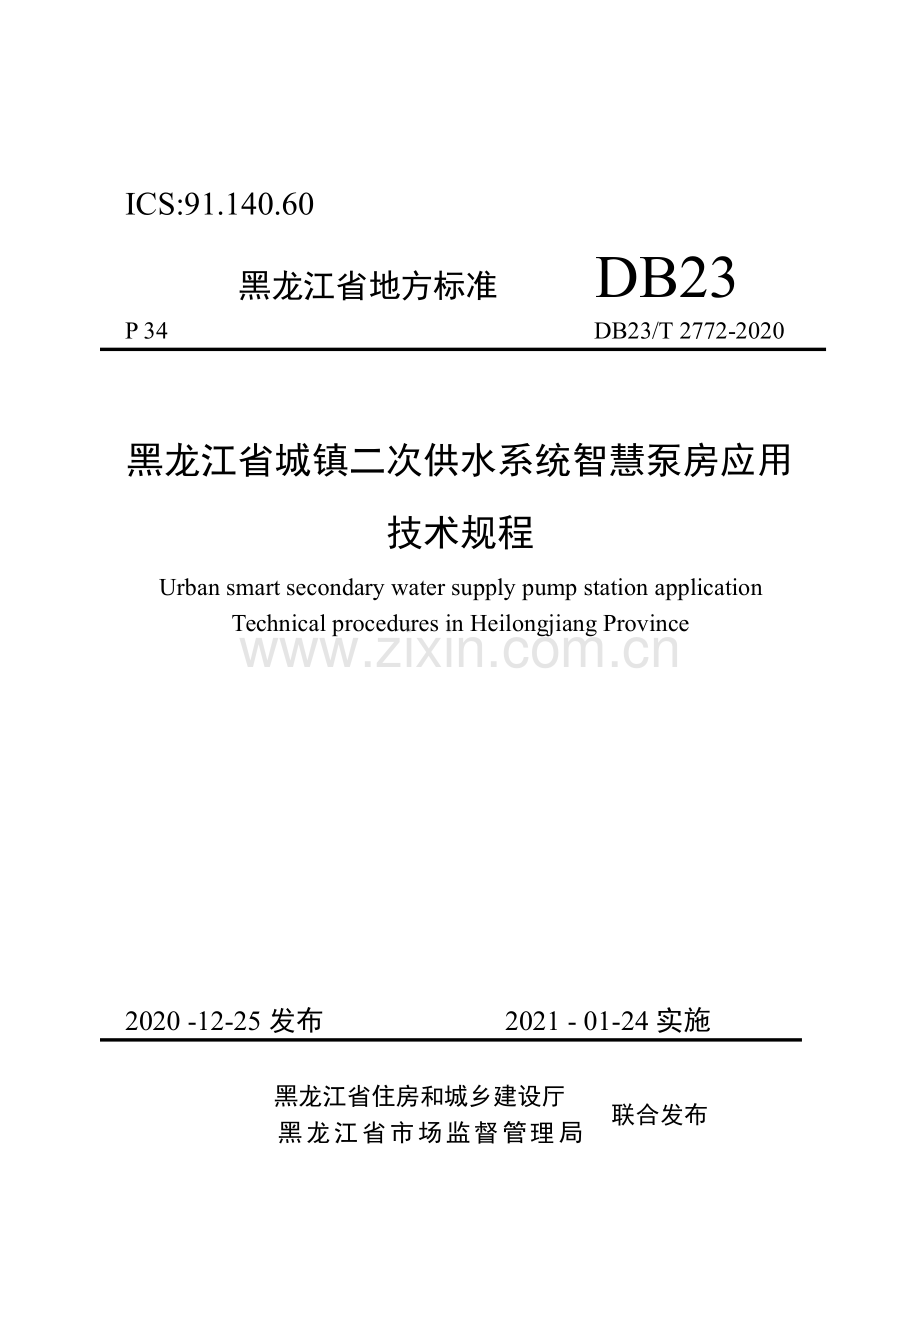 DB23∕T 2772—2020 黑龙江省城镇二次供水系统智慧泵房应用技术规程(黑龙江省).pdf_第1页